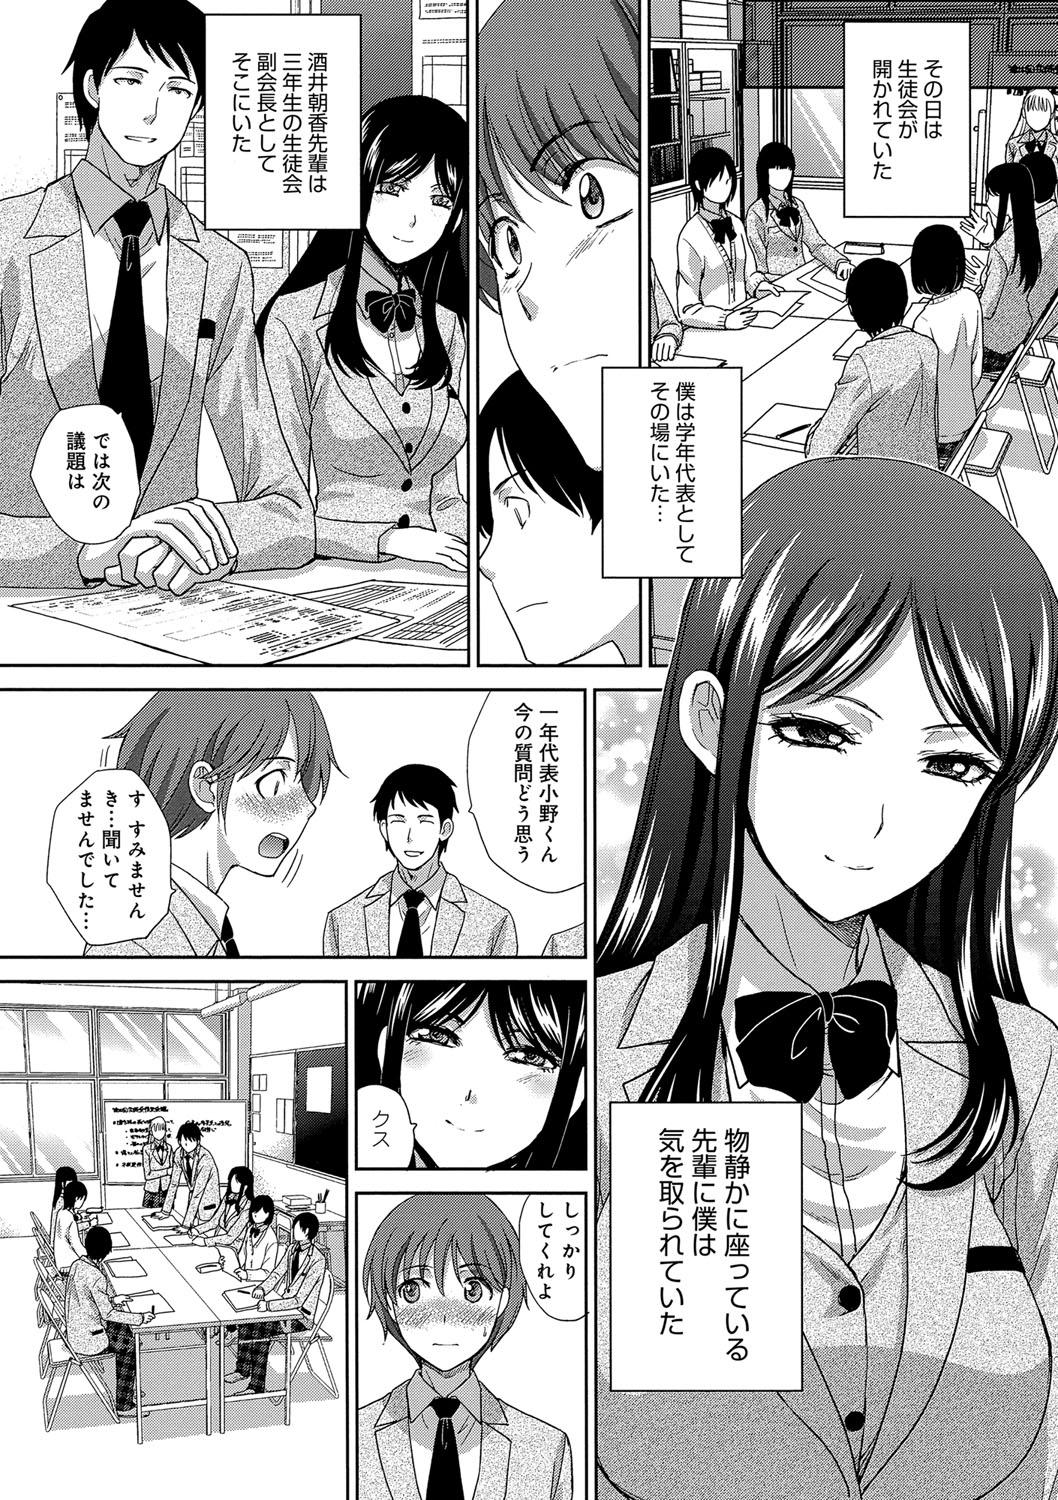 Passion Kono Haru, Kanojo ga Dekimashita. - I found a girlfriend in this spring Tia - Page 6